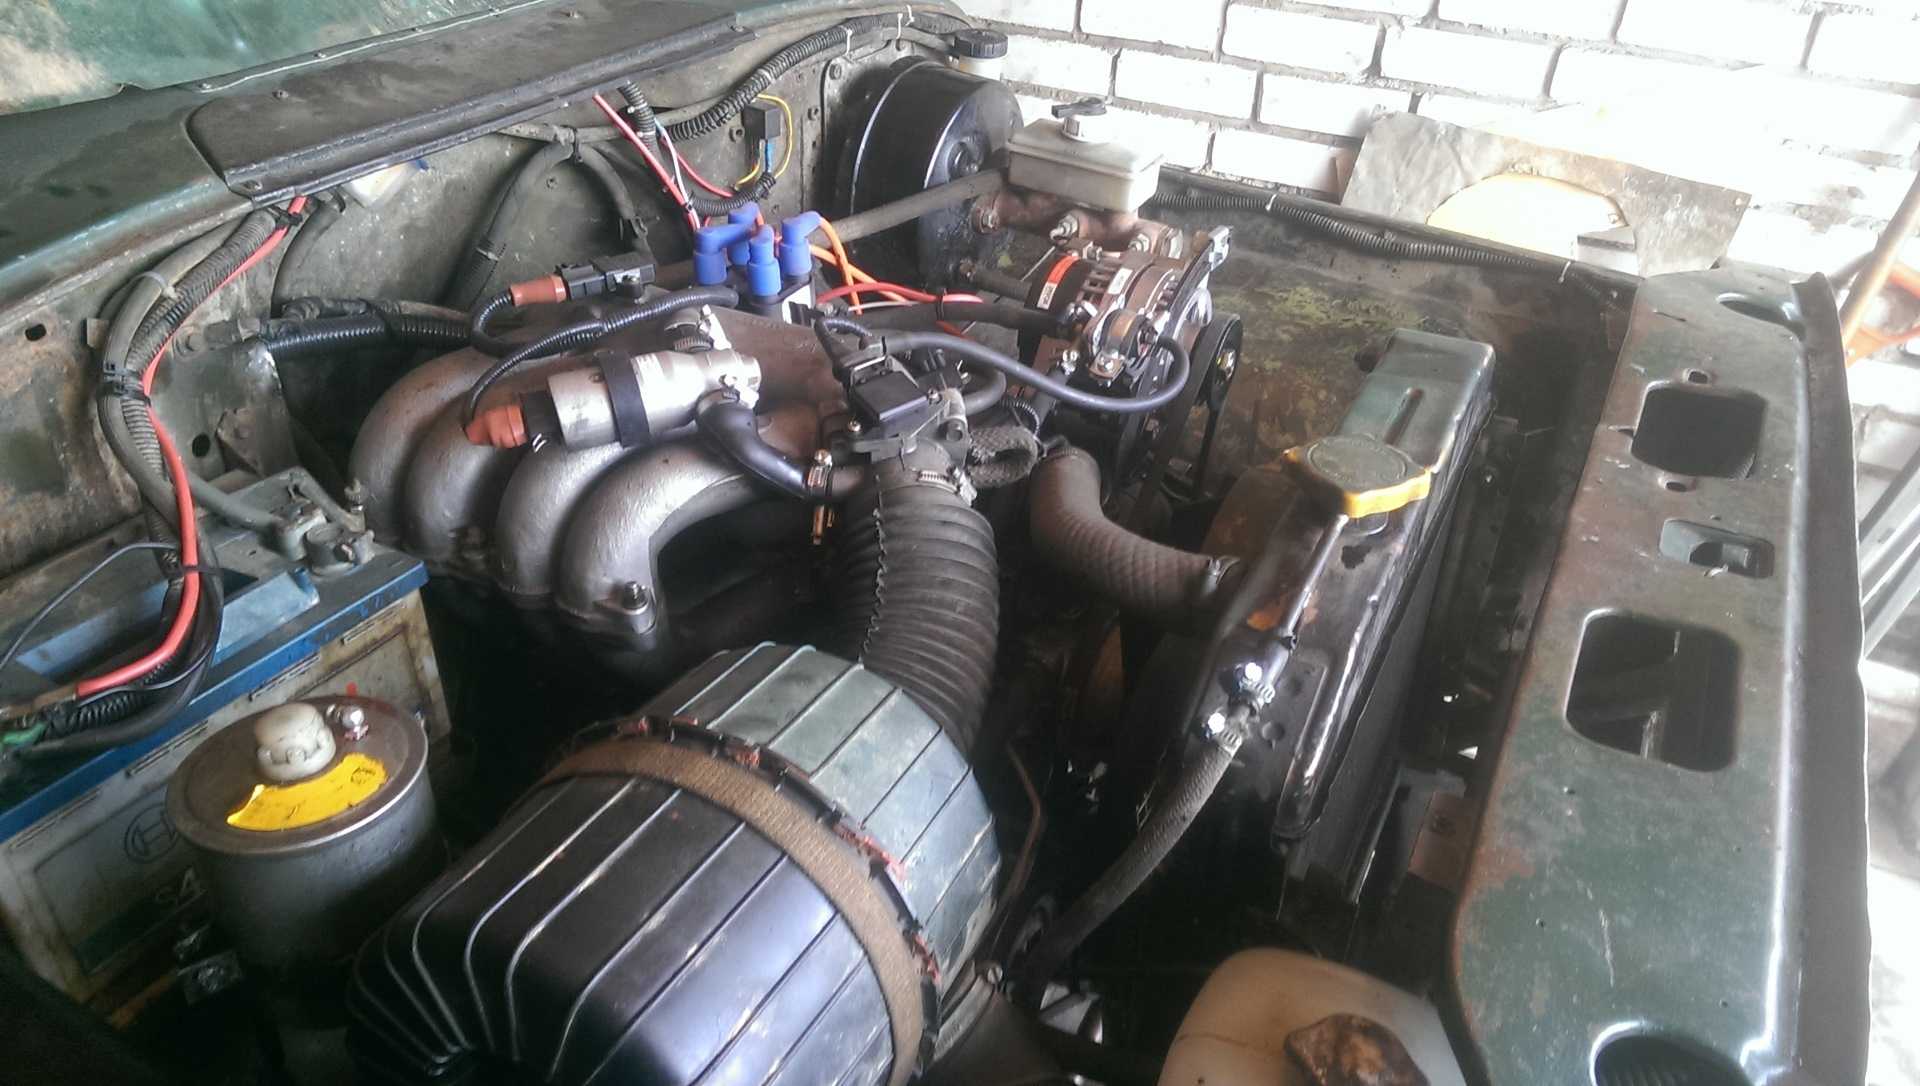 Инжекторный двигатель на УАЗ 469. Инжектор на УАЗ 469. Установка инжектора на УАЗ 469. Форсировка  двигателя УАЗ. Уазик инжекторный